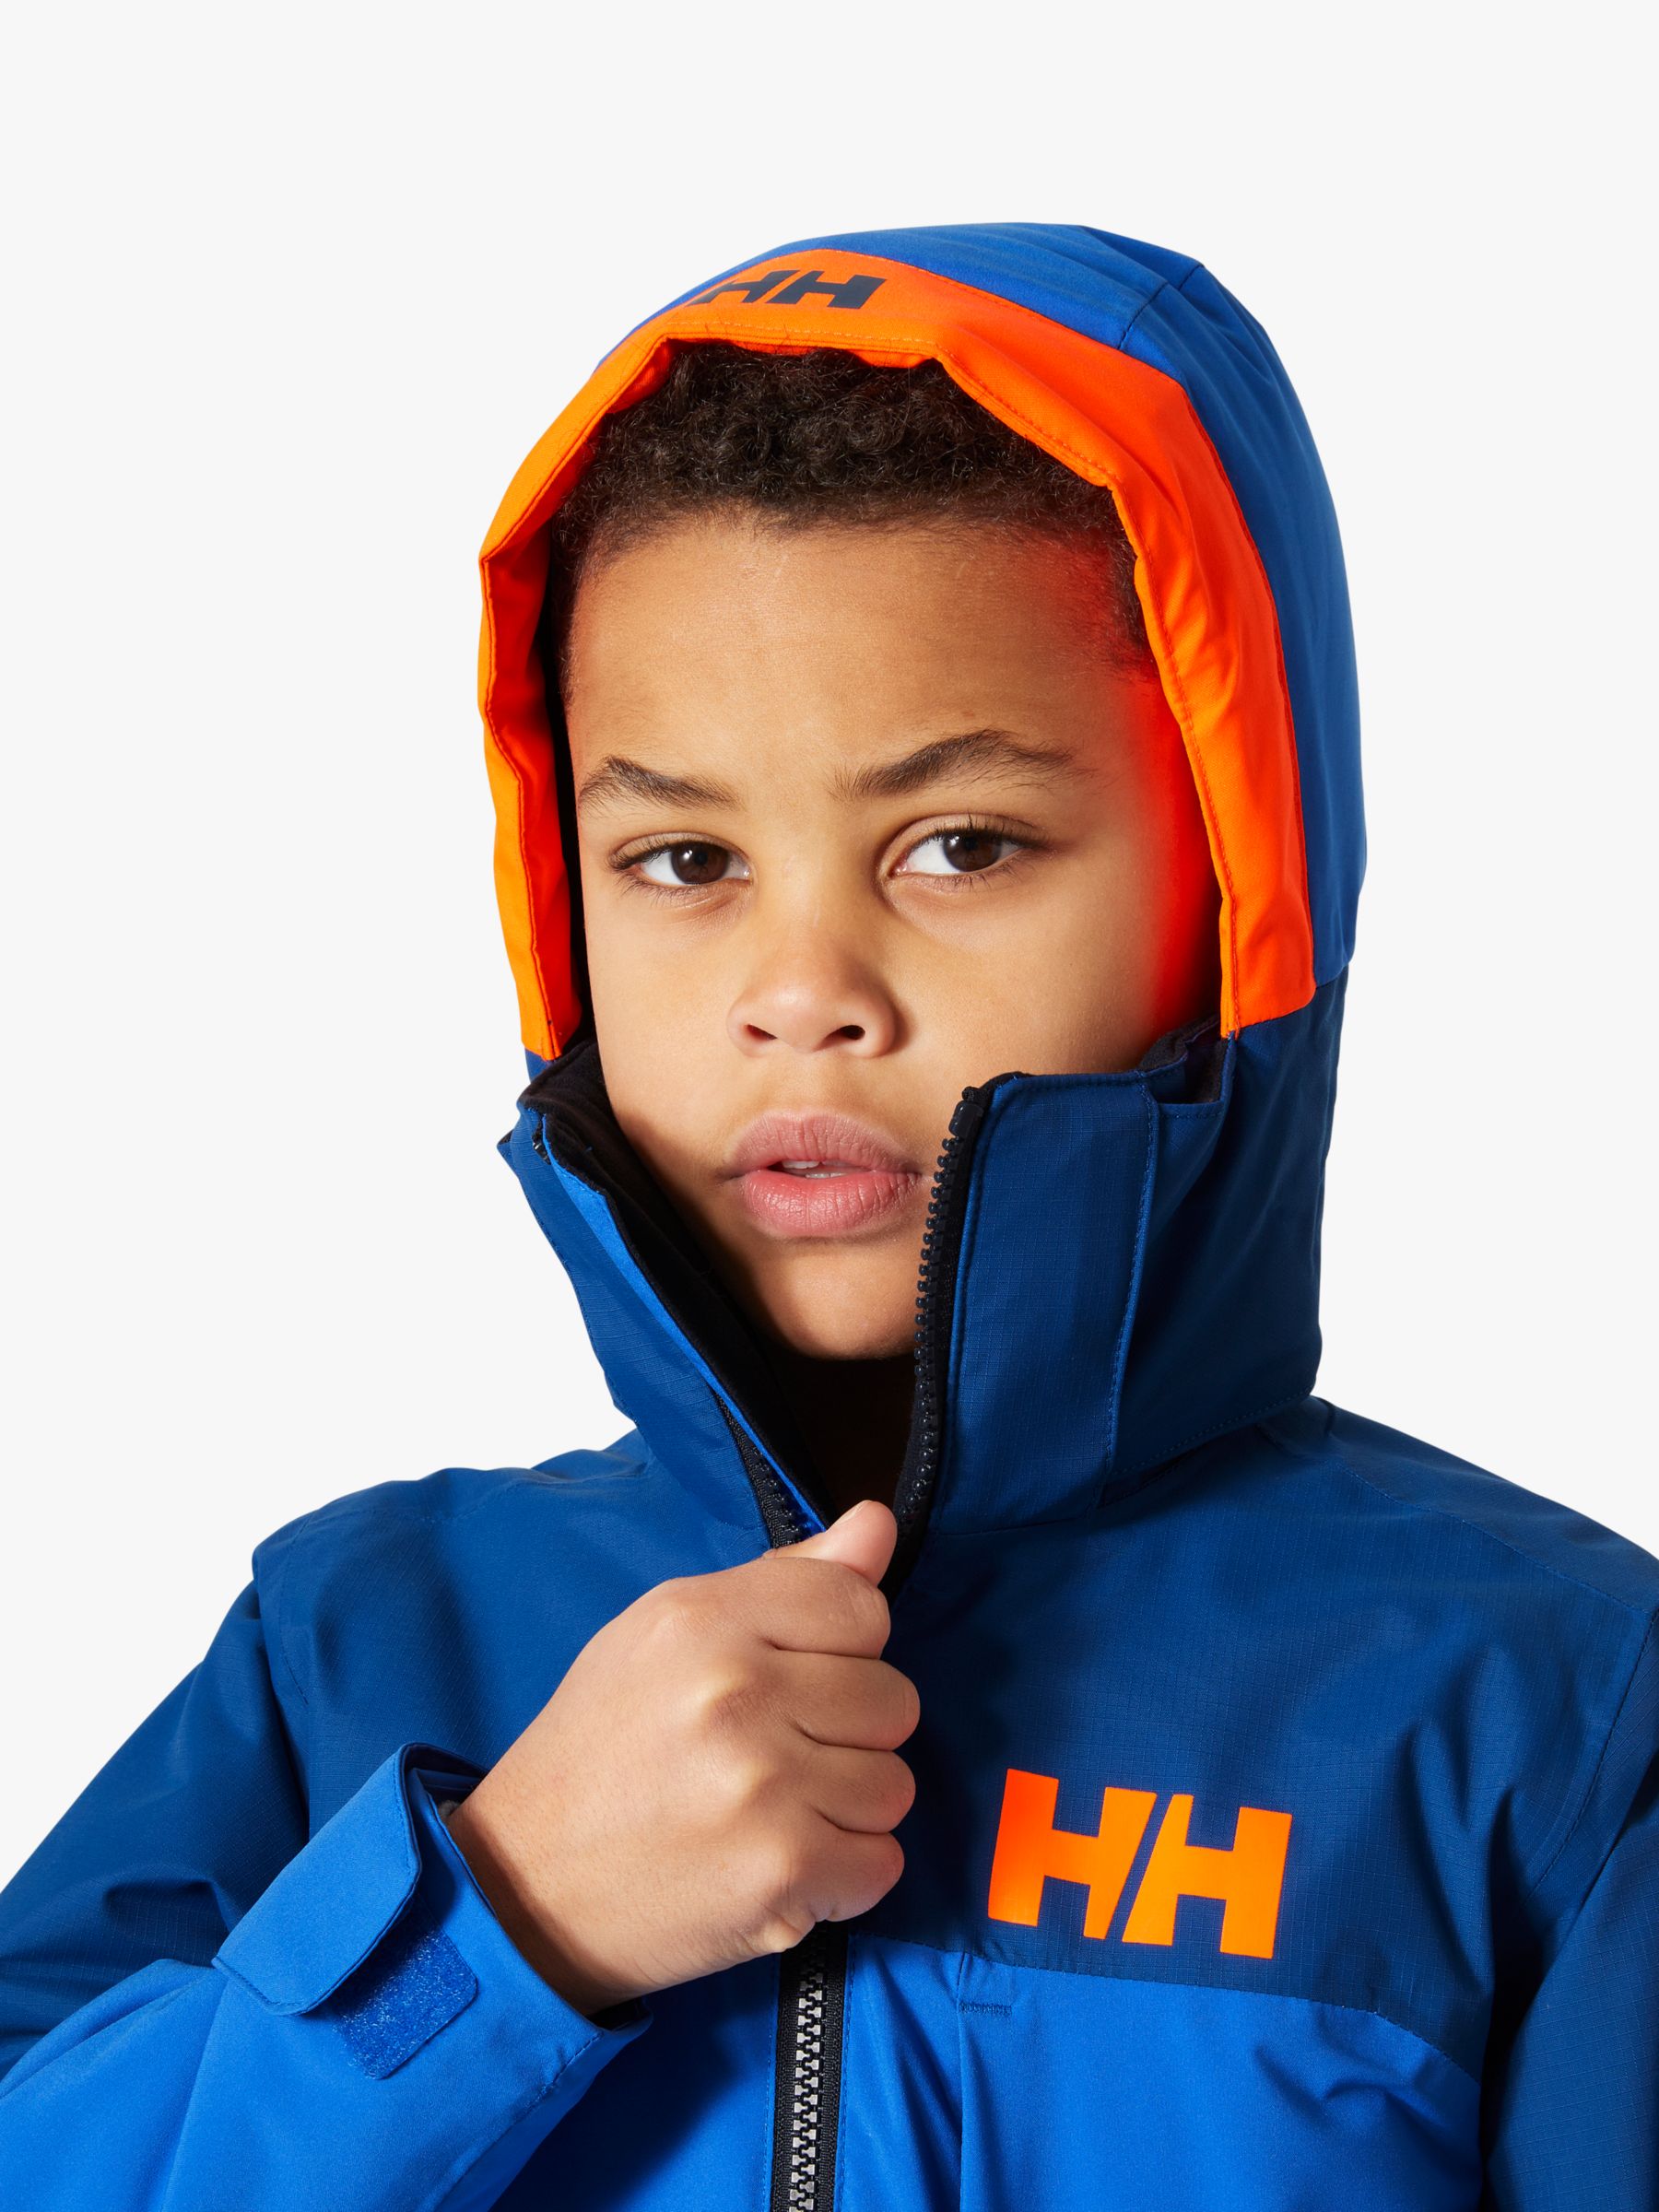 Helly Hansen Kids' Summit Jacket, Colbolt, 8 years